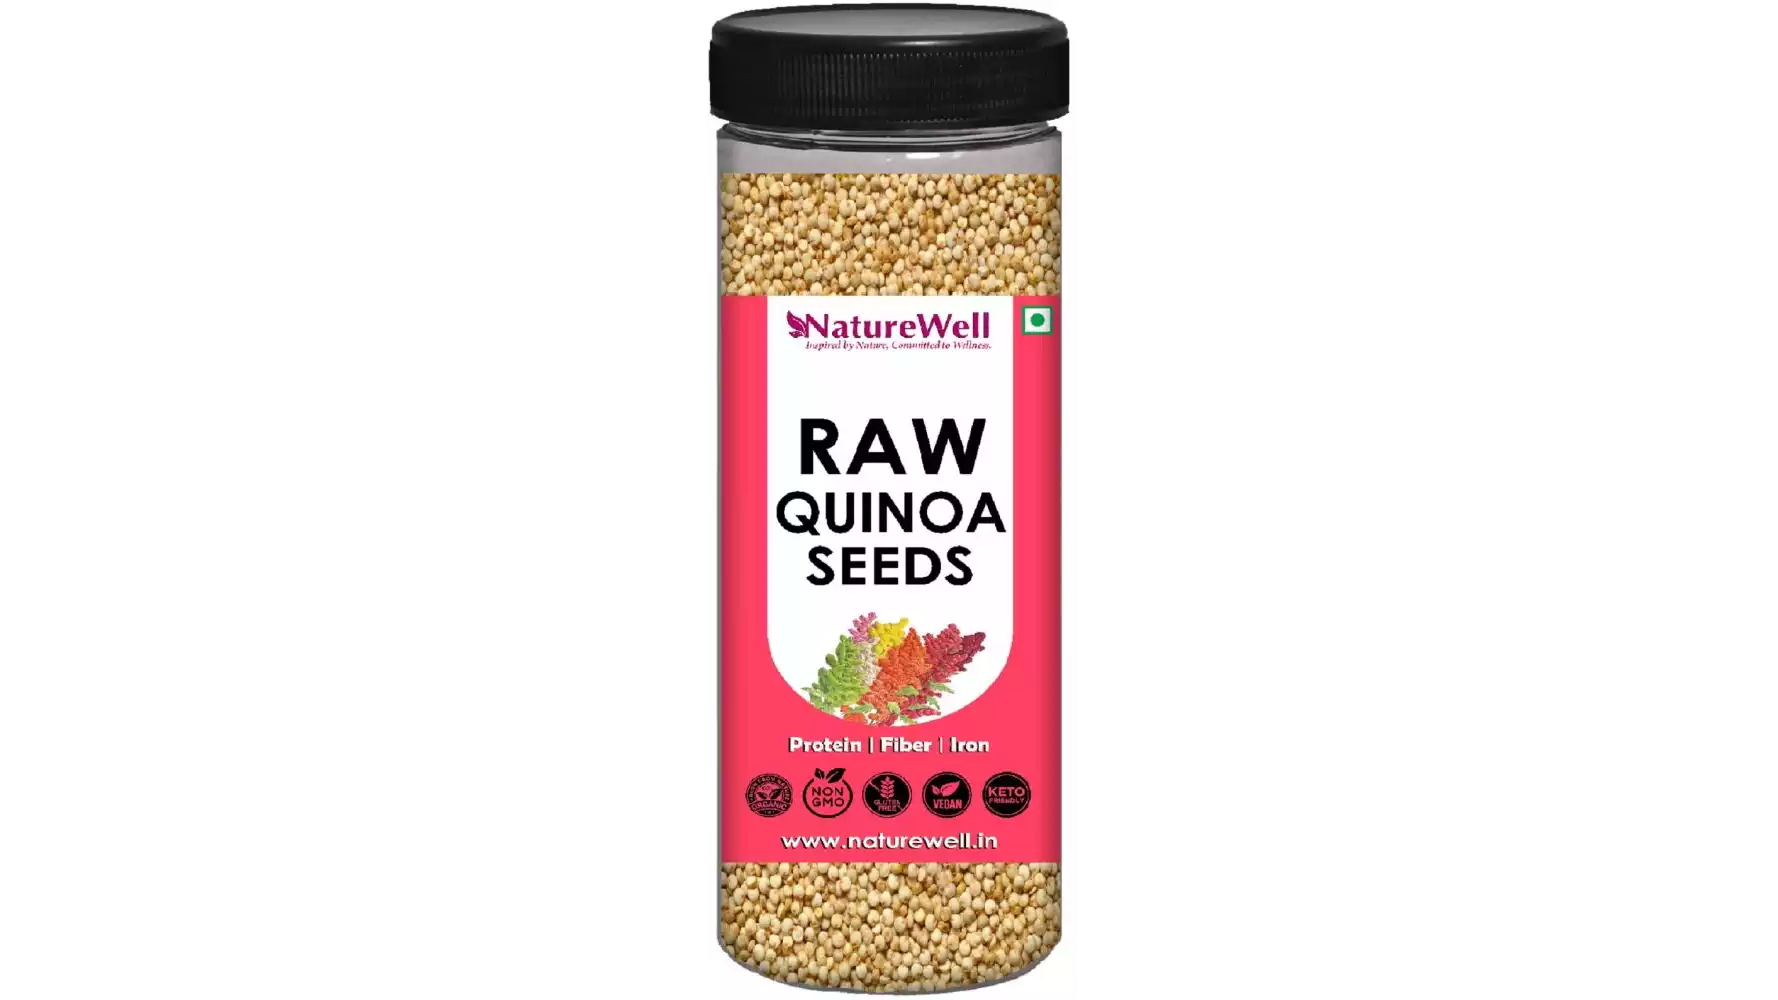 NatureWell Quinoa Seeds Raw (200g)